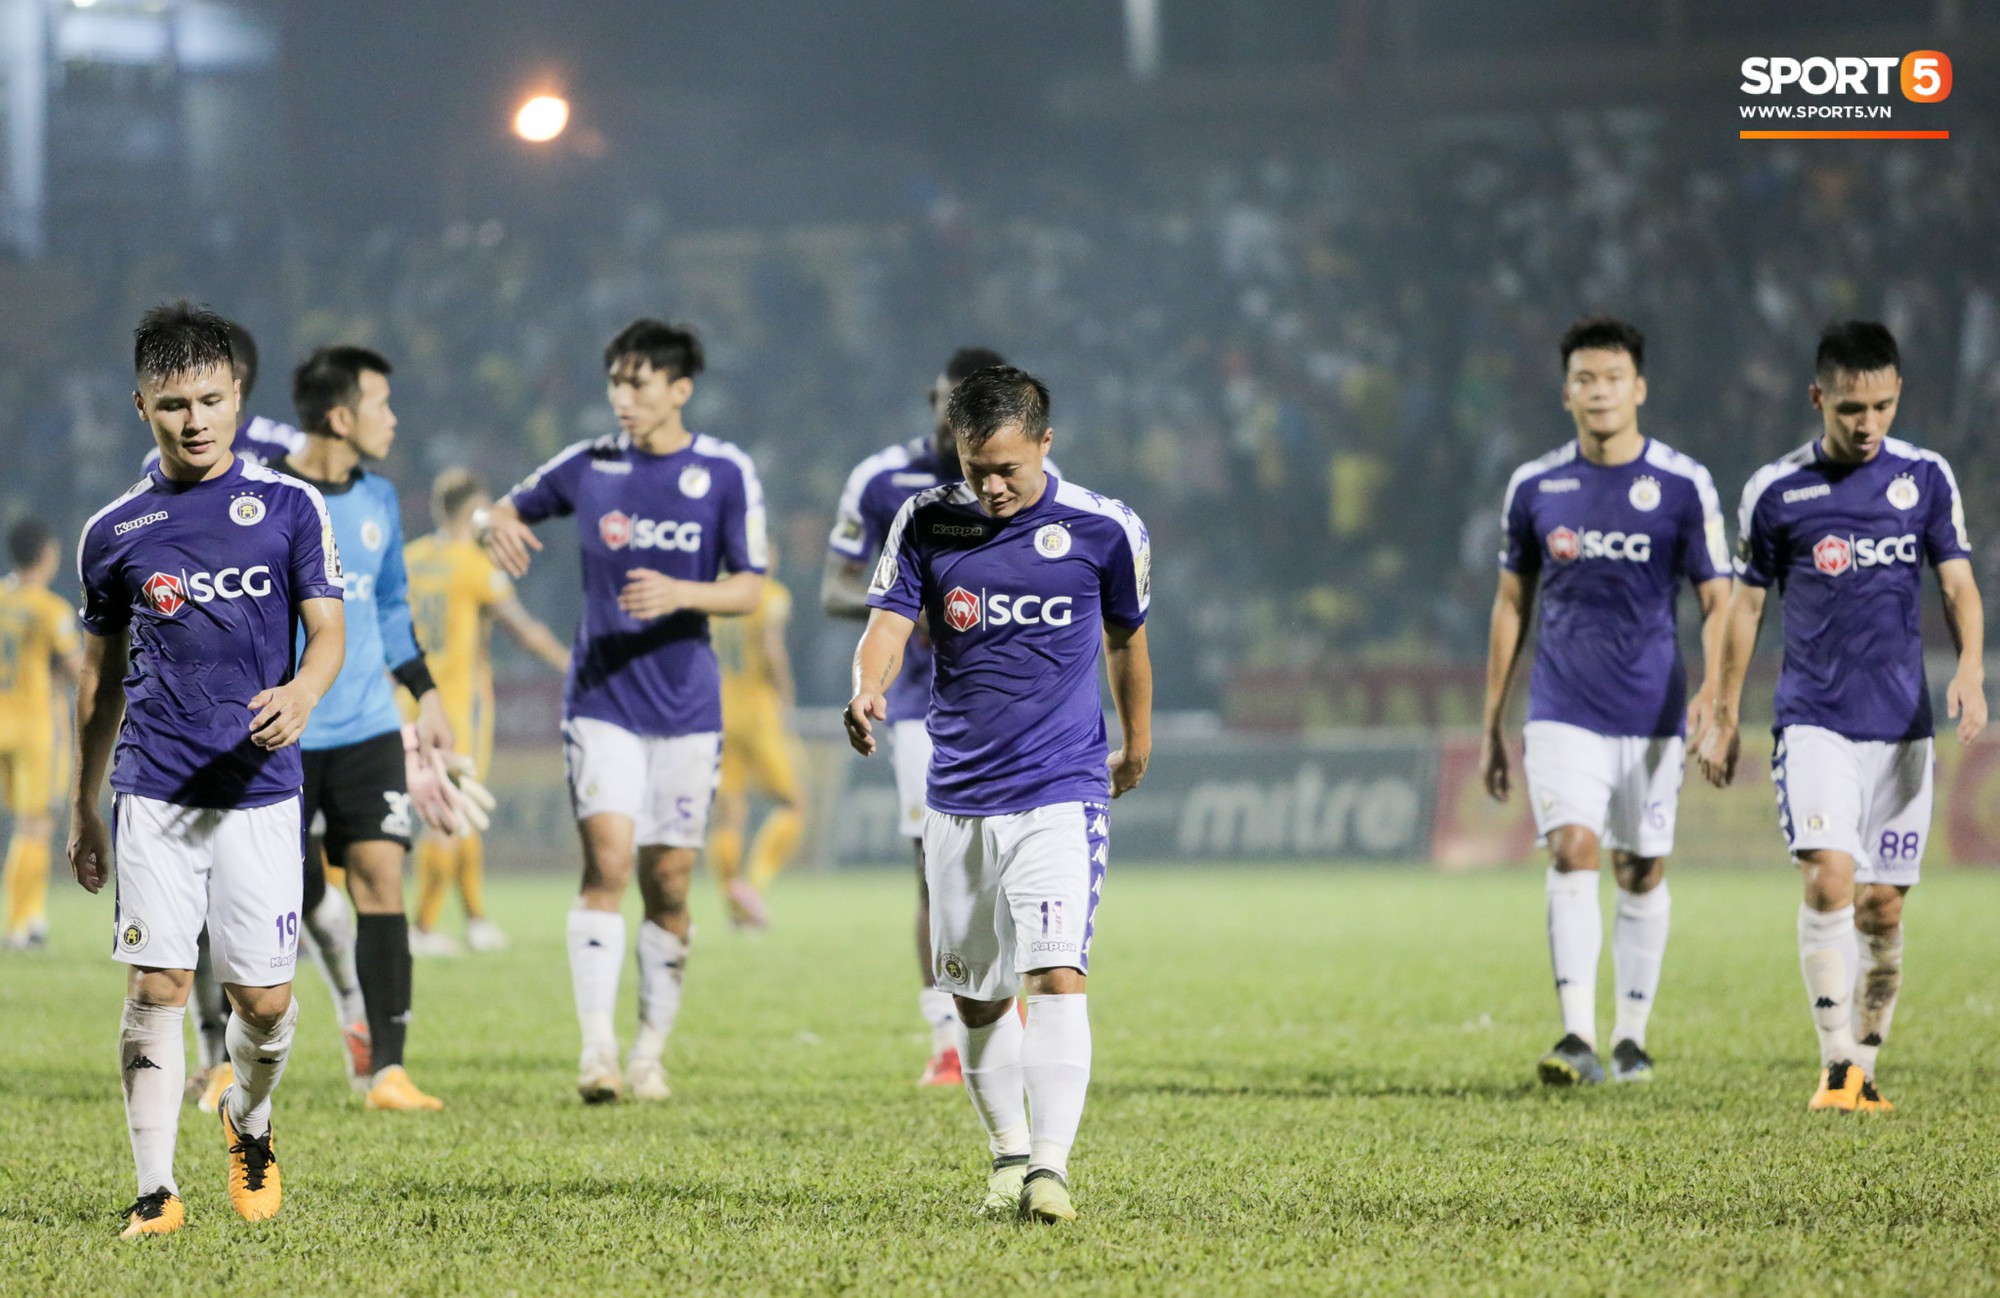 Bùi Tiến Dũng chán nản, không khí Hà Nội FC ảm đạm vì thua thảm trước CLB Thanh Hoá - Ảnh 9.